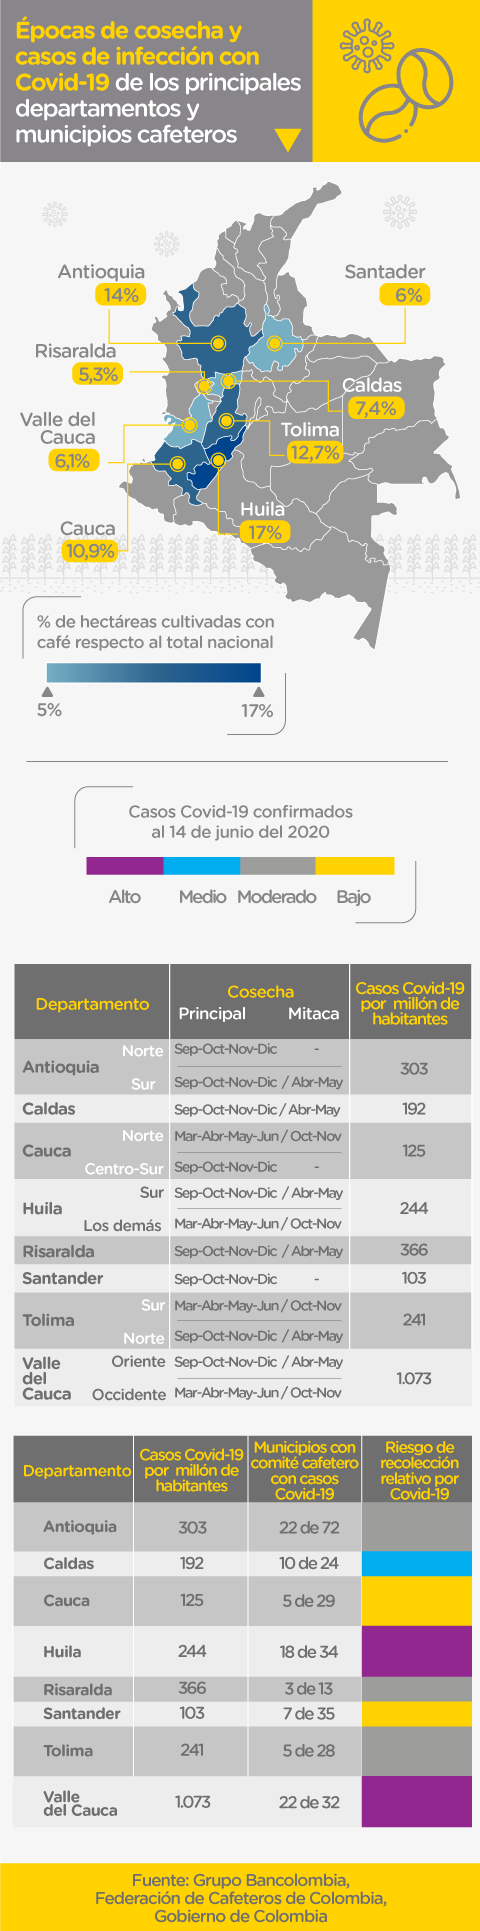 Cuadro comparativo de épocas de cosecha y casos de infección con covid-19 de los principales departamentos y municipios cafeteros.